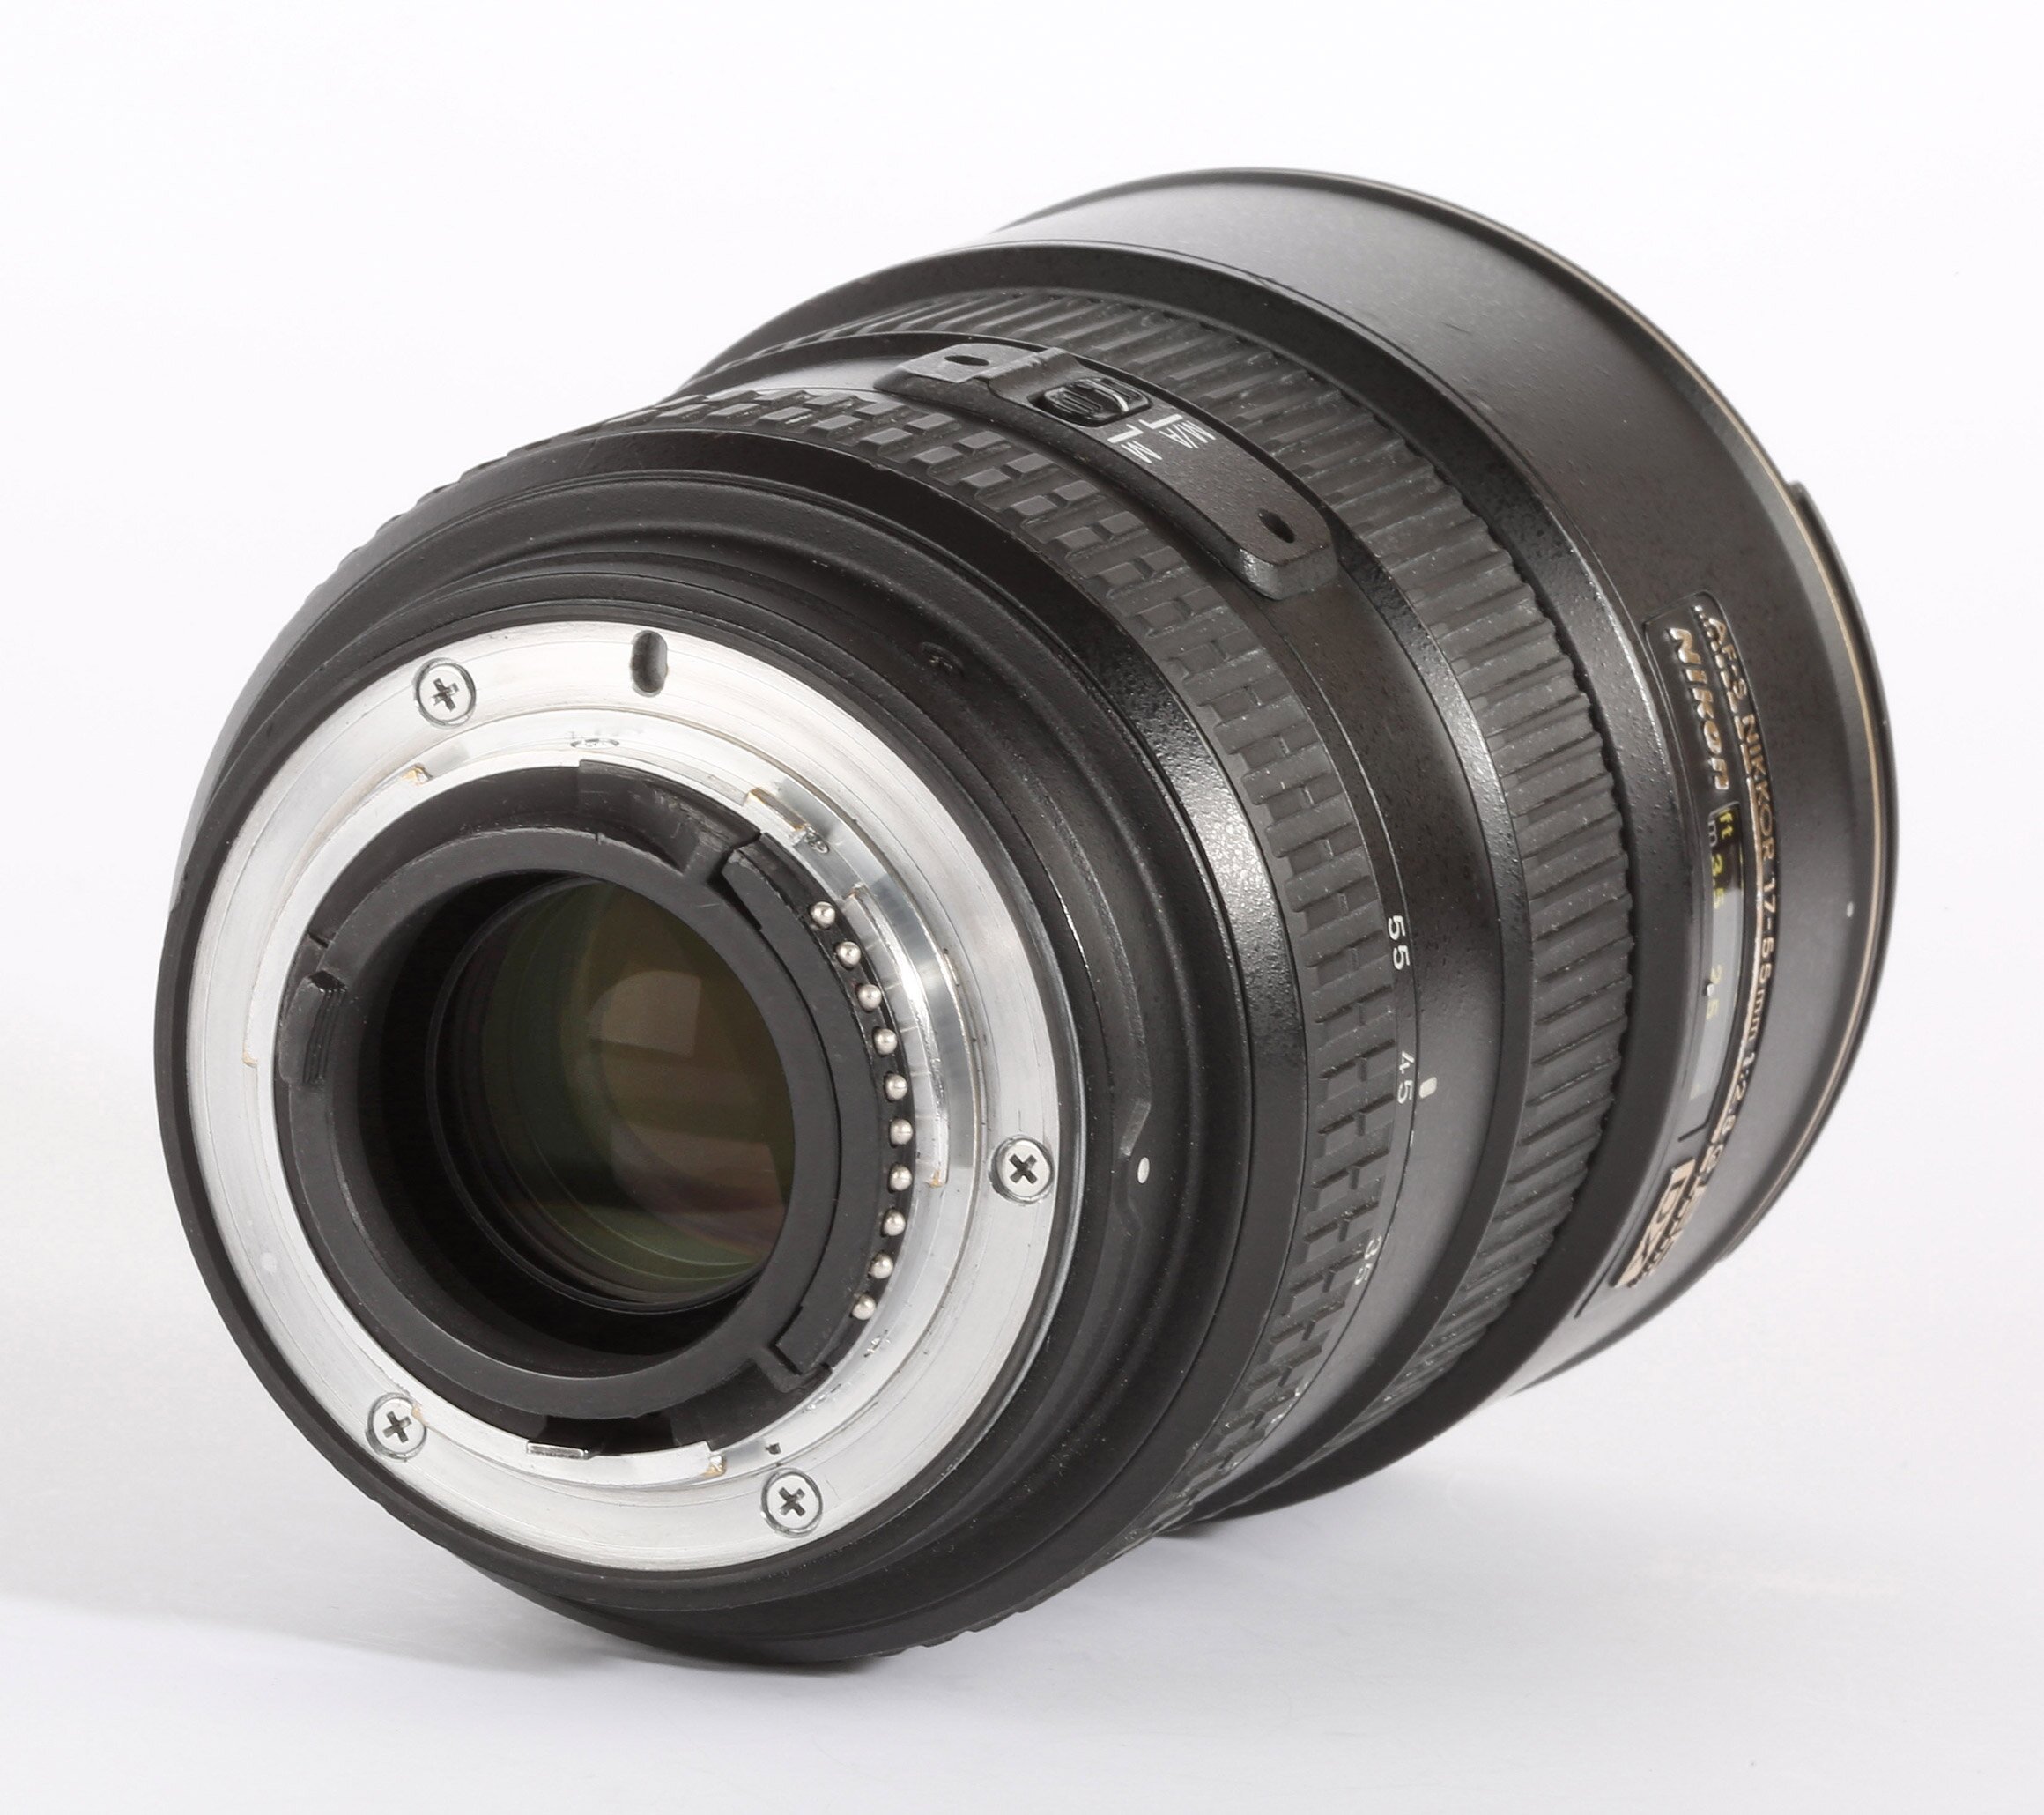 Nikon AF-S 17-55mm 1:2,8 G IF ED DX Zoom-Nikkor